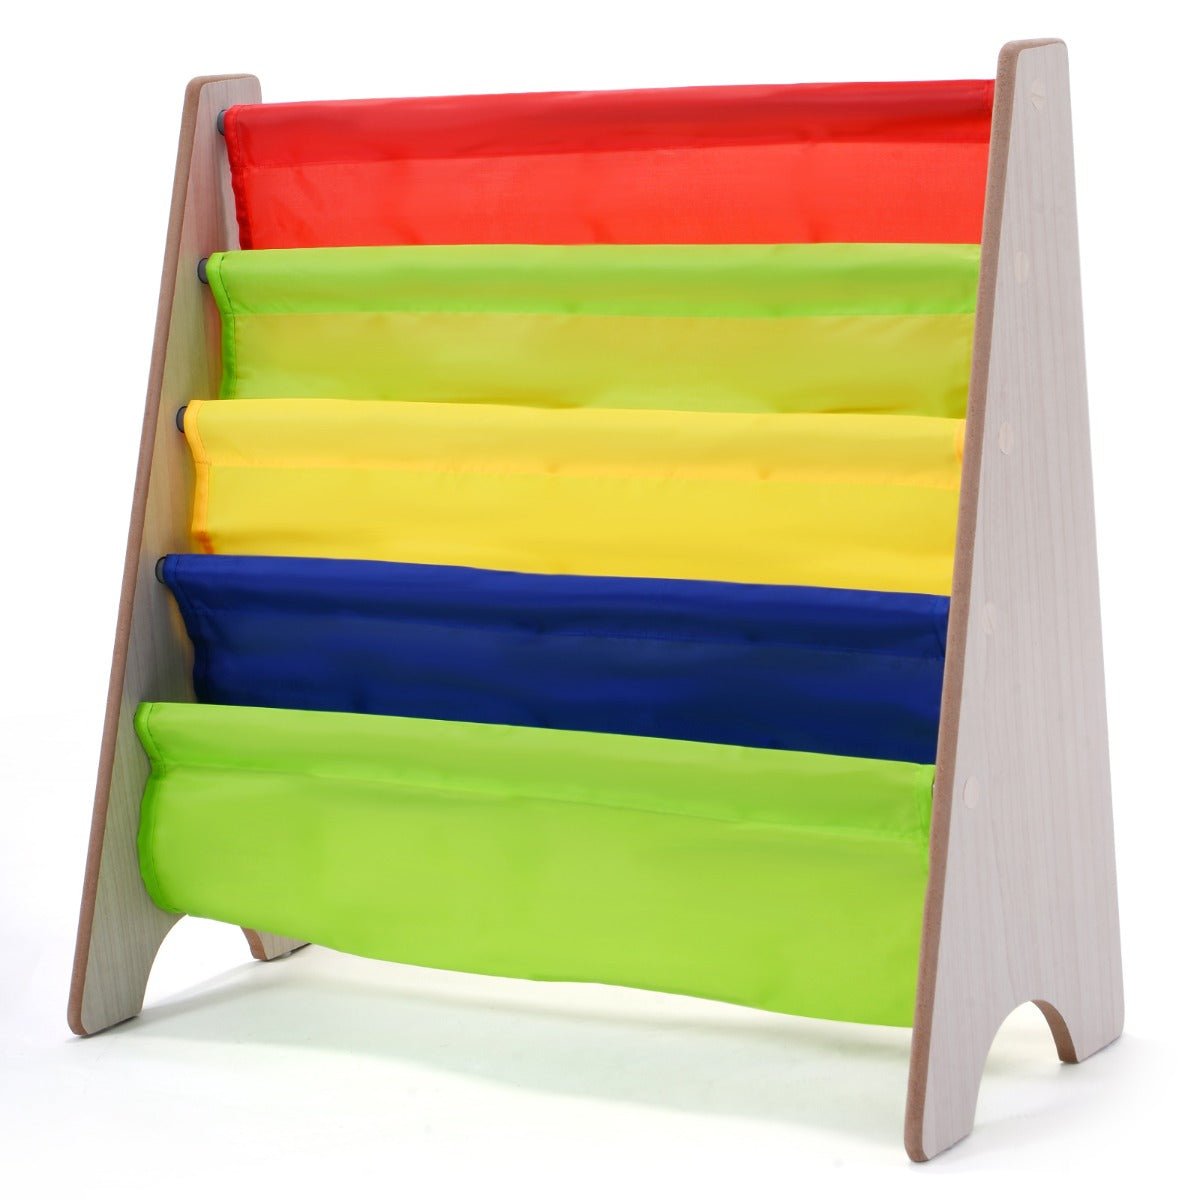 Kids Bookshelf - Storage Compartment Organizer for Children's Books